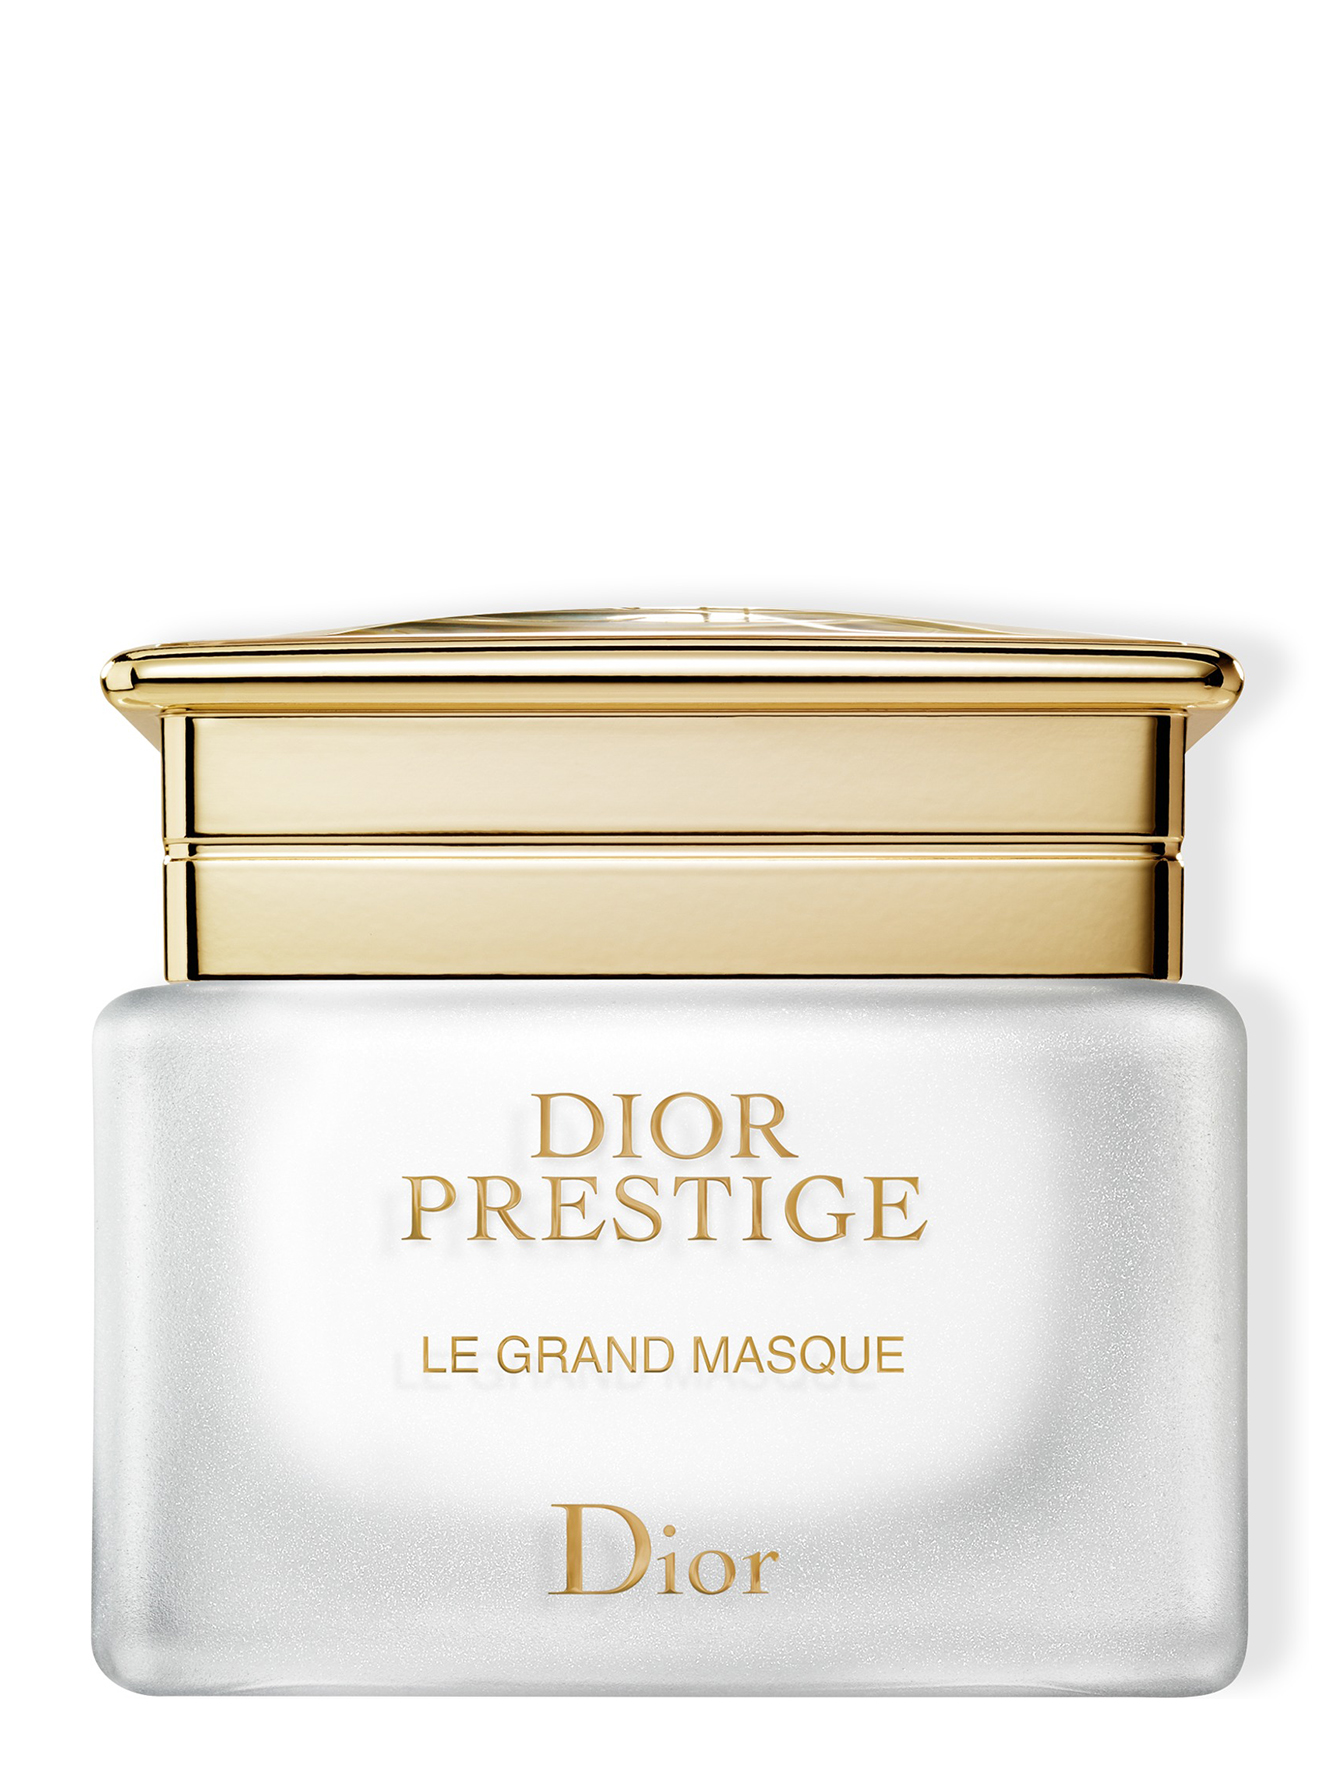 Dior Prestige Интенсивная маска для лица, насыщенная кислородом 50 мл - Деталь